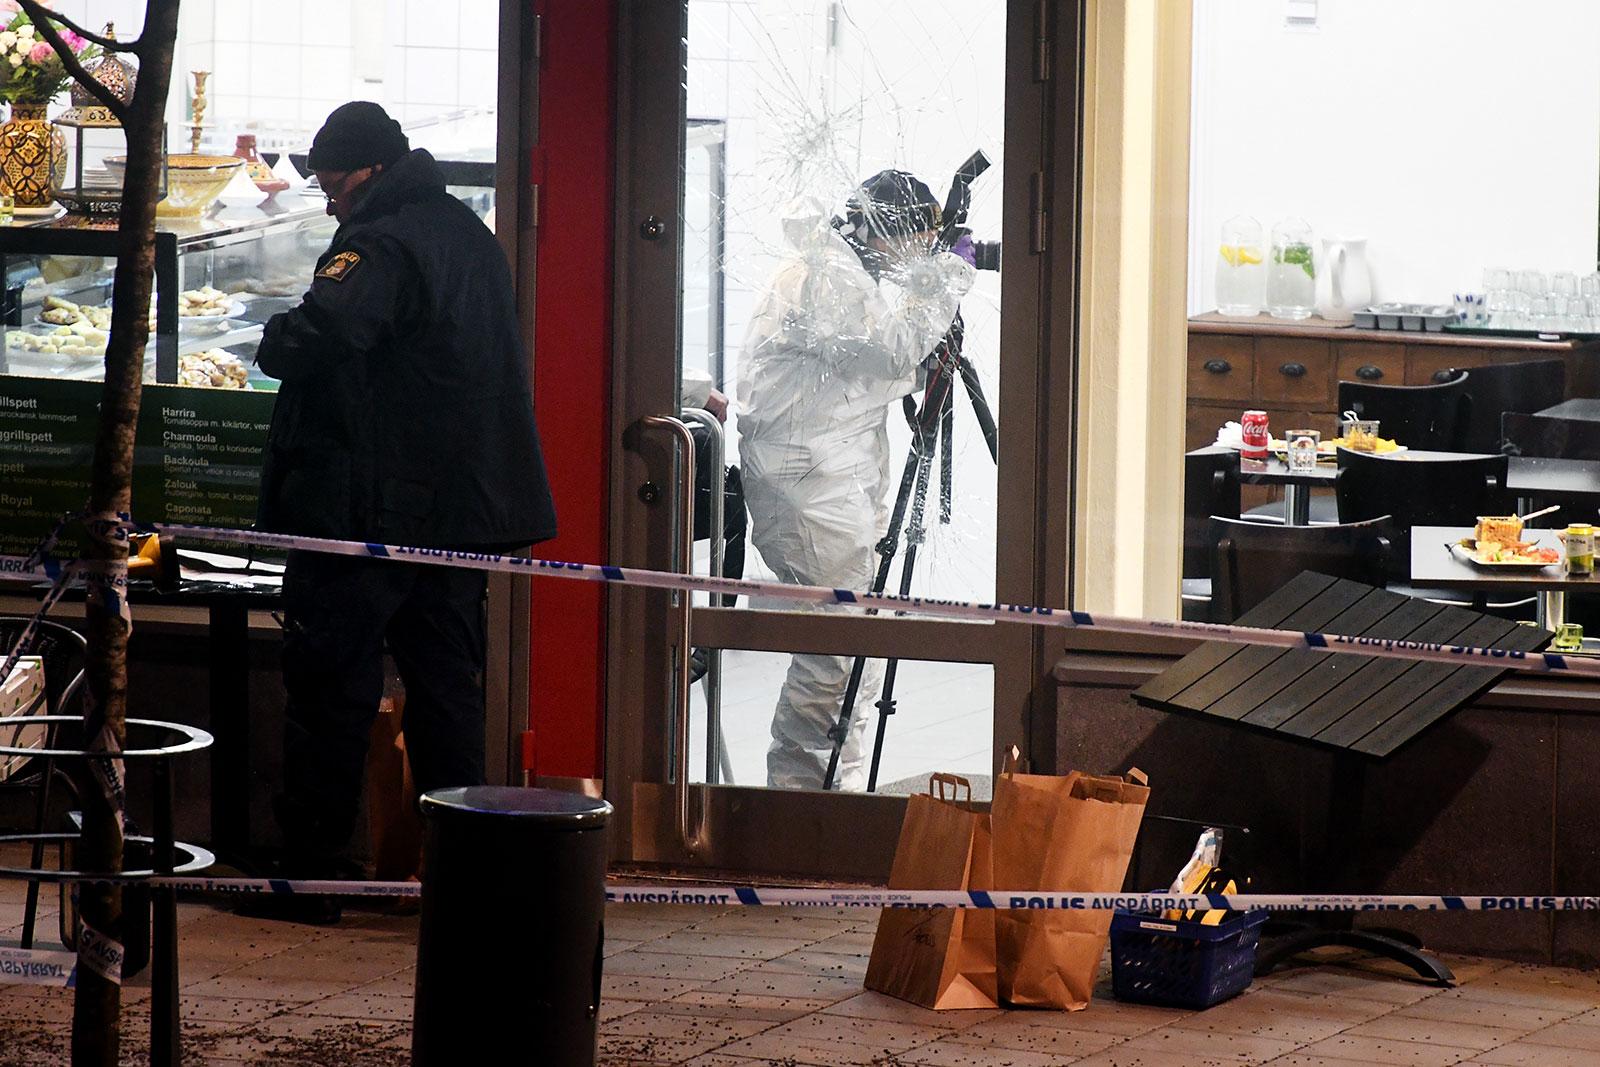 Två personer sköts till döds på ett kafé i Rinkeby den 2 december 2016. I oktober 2017 valde åklagaren att lägga ner utredningen.